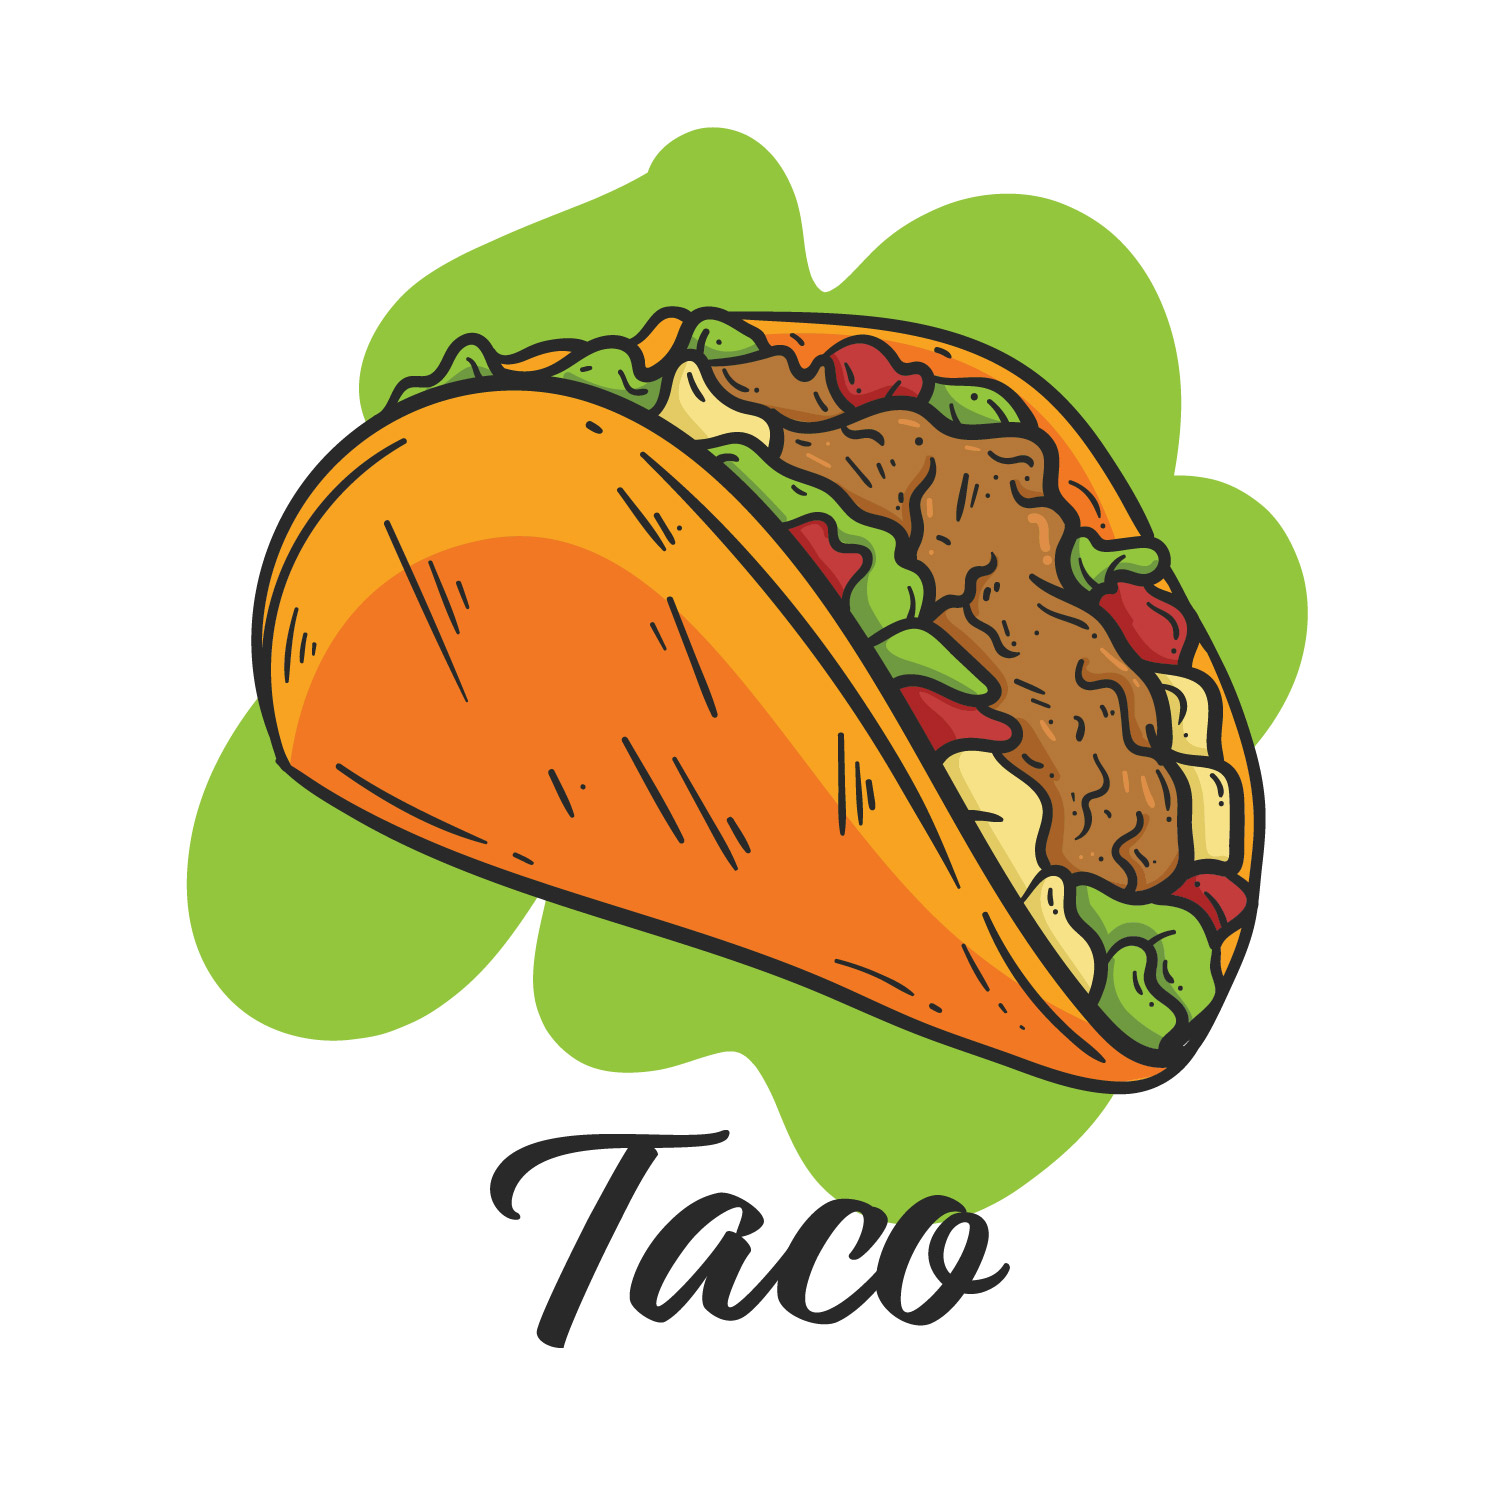 Taco, Mexican Food Menu.